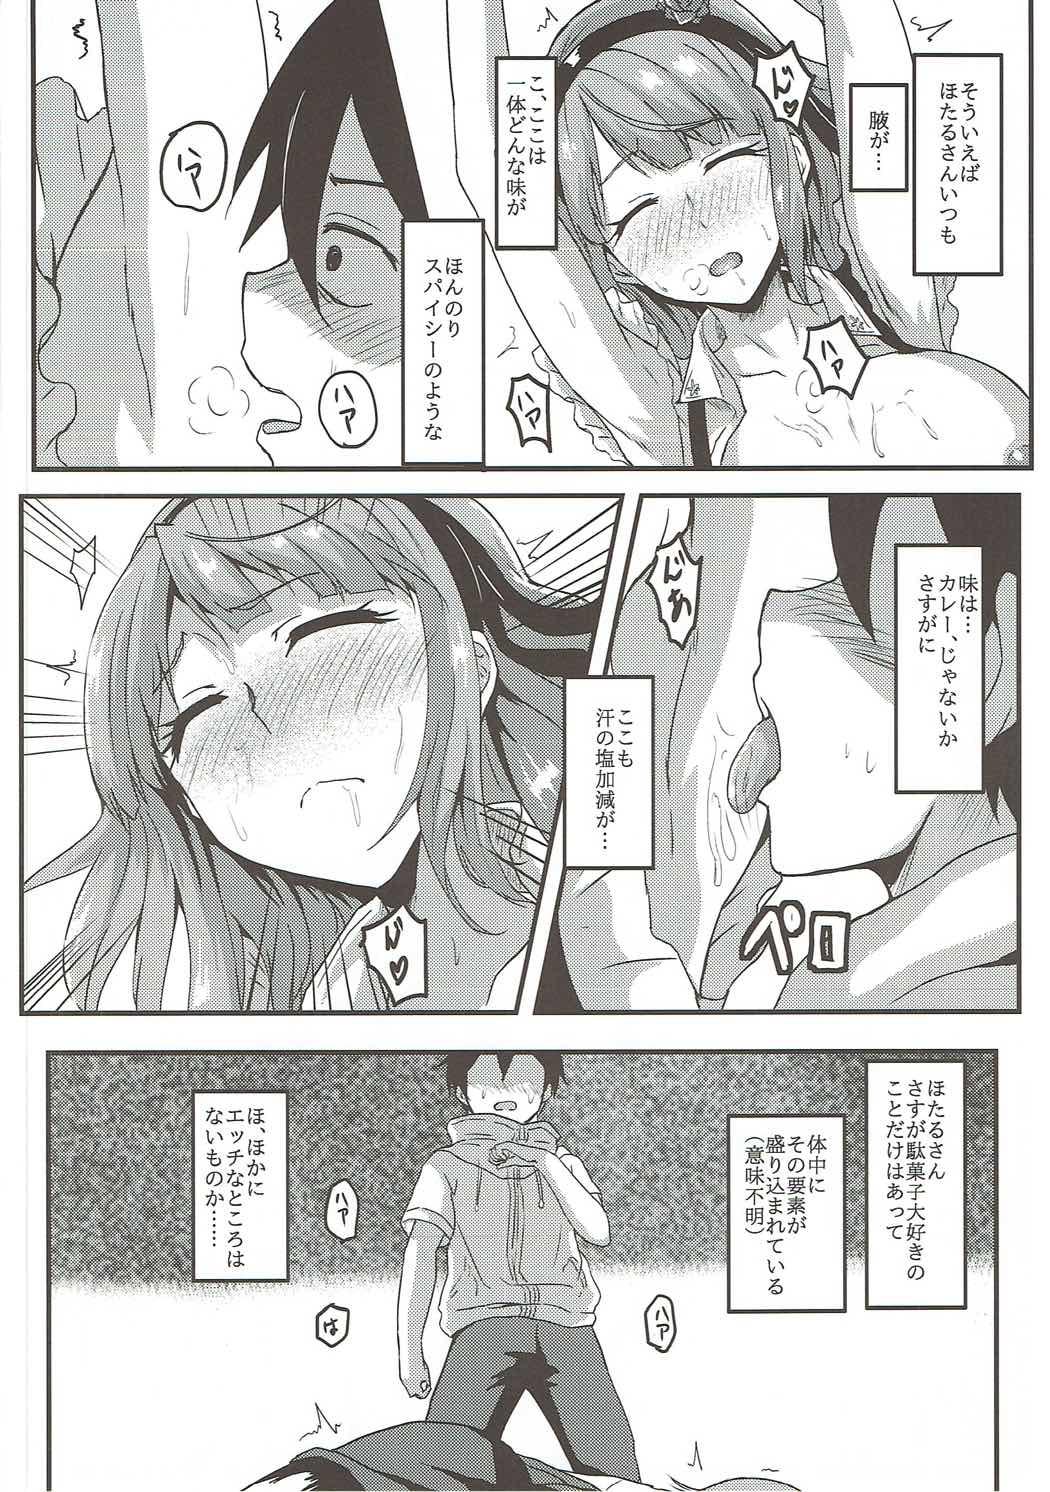 Footfetish Hotaru-san wa Dagashi no Kaori? - Dagashi kashi Mexico - Page 7